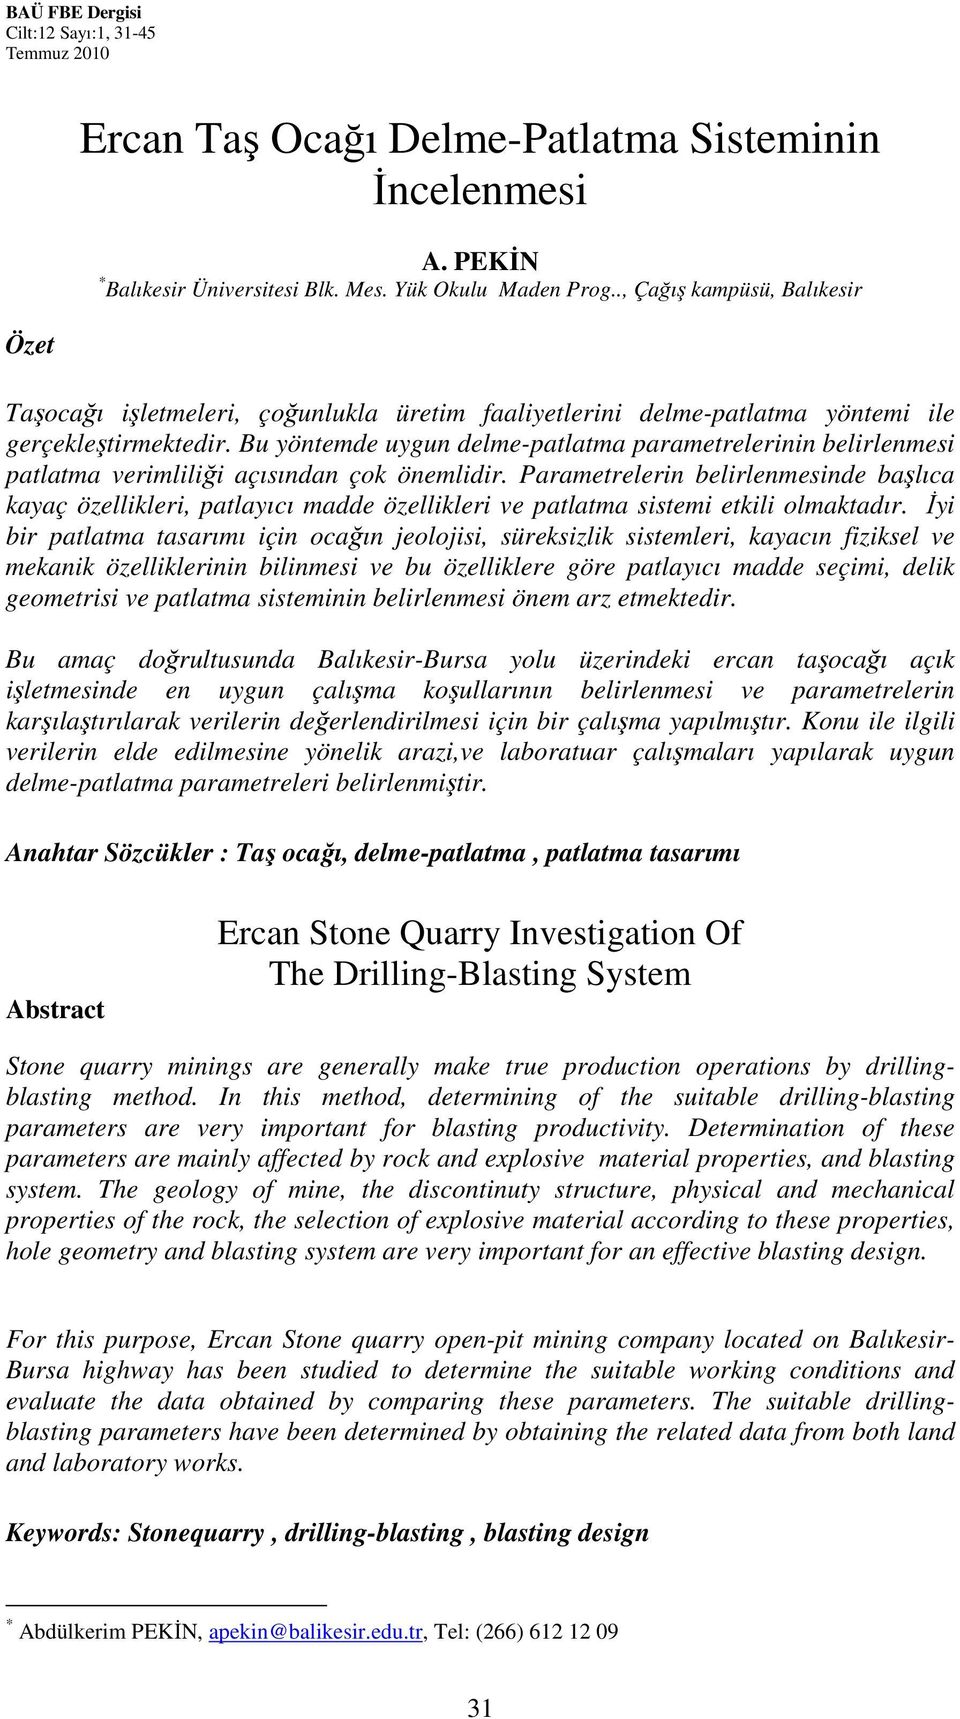 Ercan Taş Ocağı Delme-Patlatma Sisteminin İncelenmesi - PDF Ücretsiz indirin